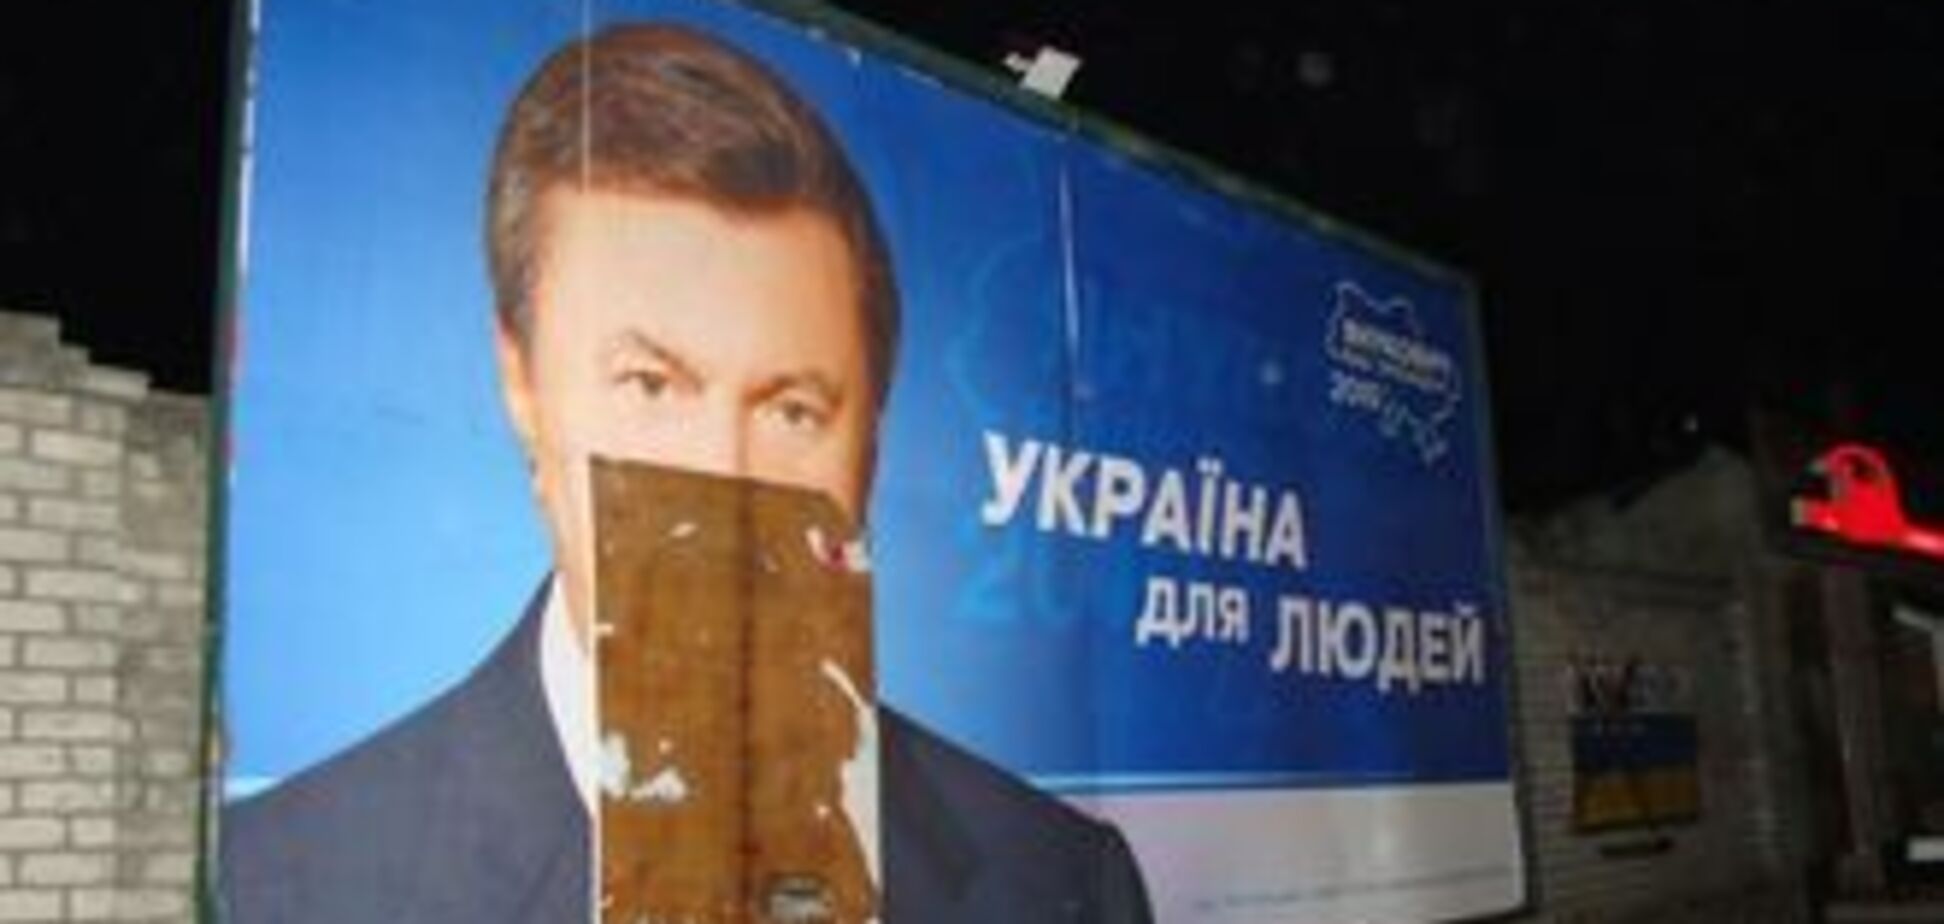 Тернопольские хулиганы облили Януковича краской